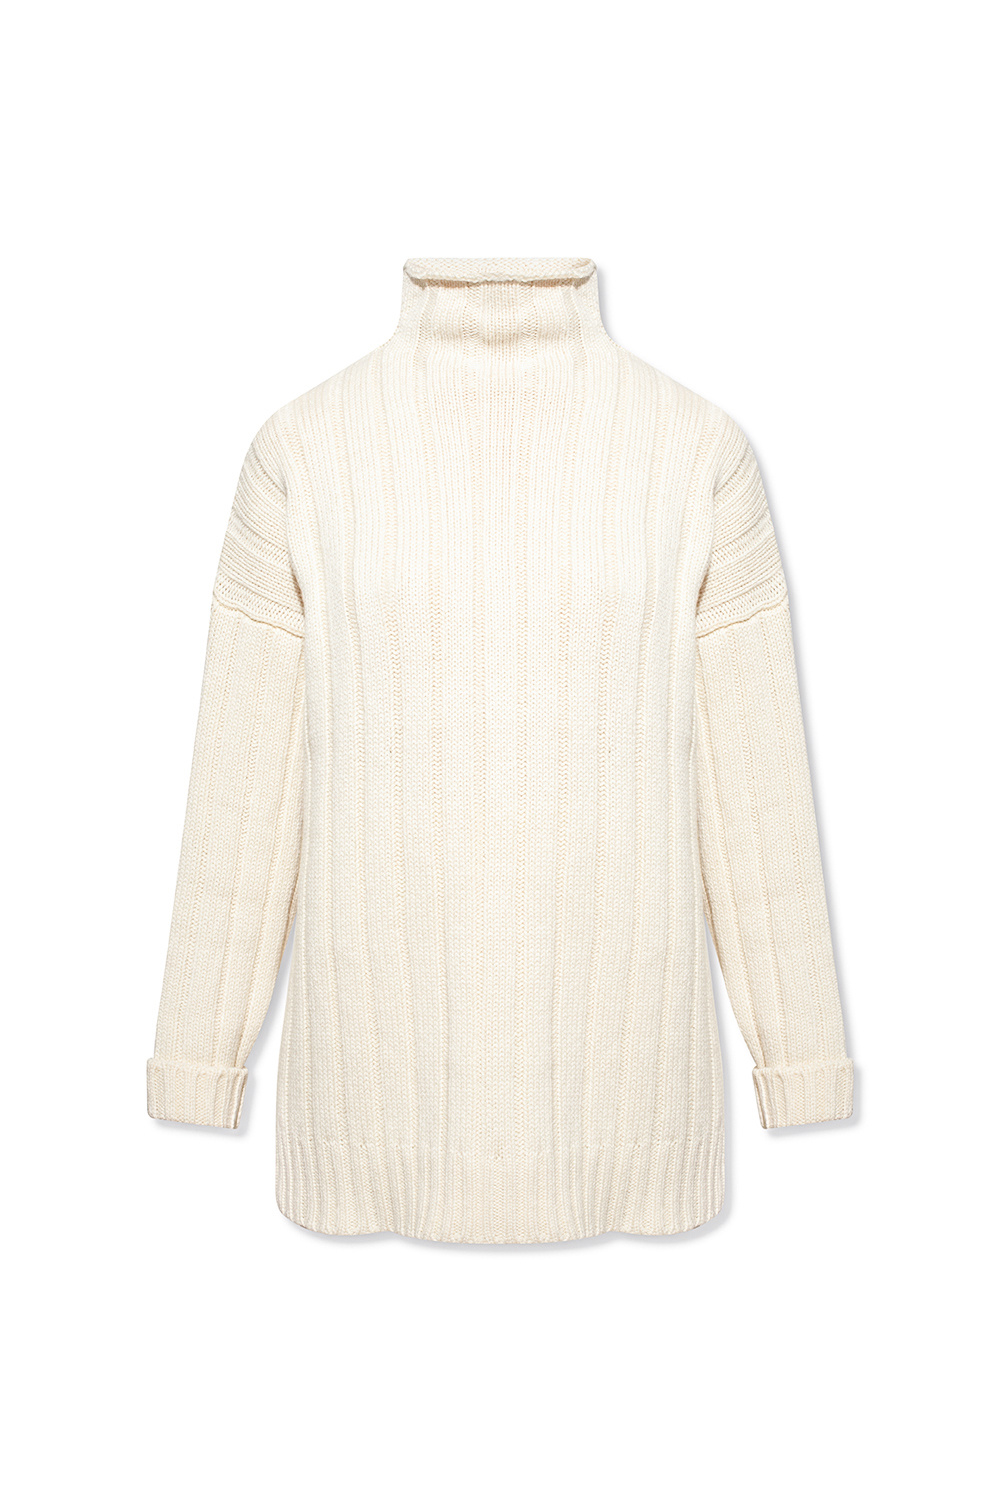 Louis Vuitton Shoulder Detail Turtleneck Sweater - Vitkac shop online